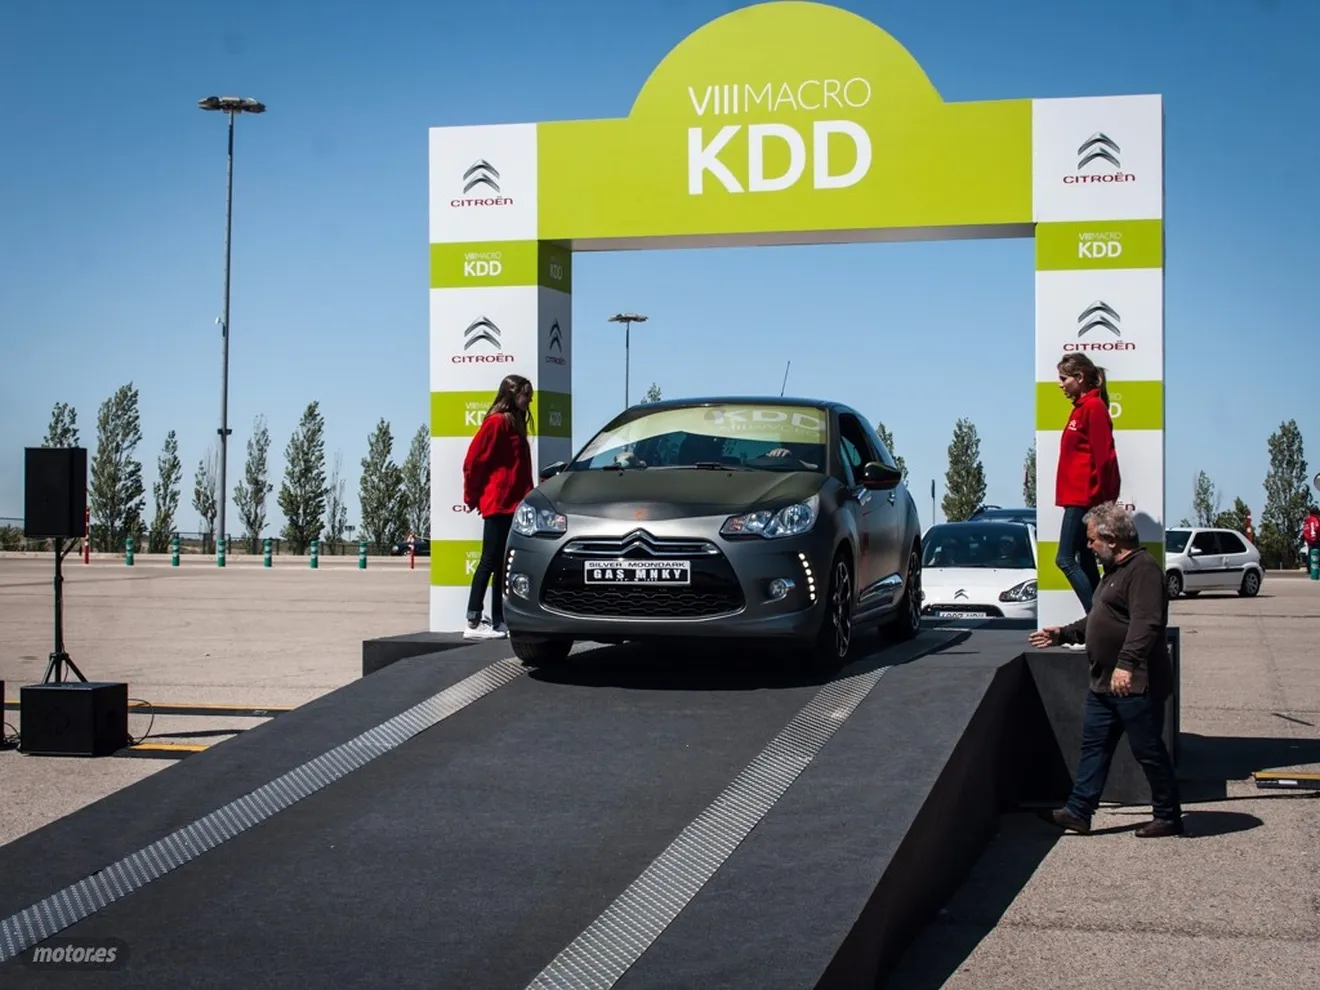 Macro KDD Citroën 2015, diversión, pasión y sobre todo coches